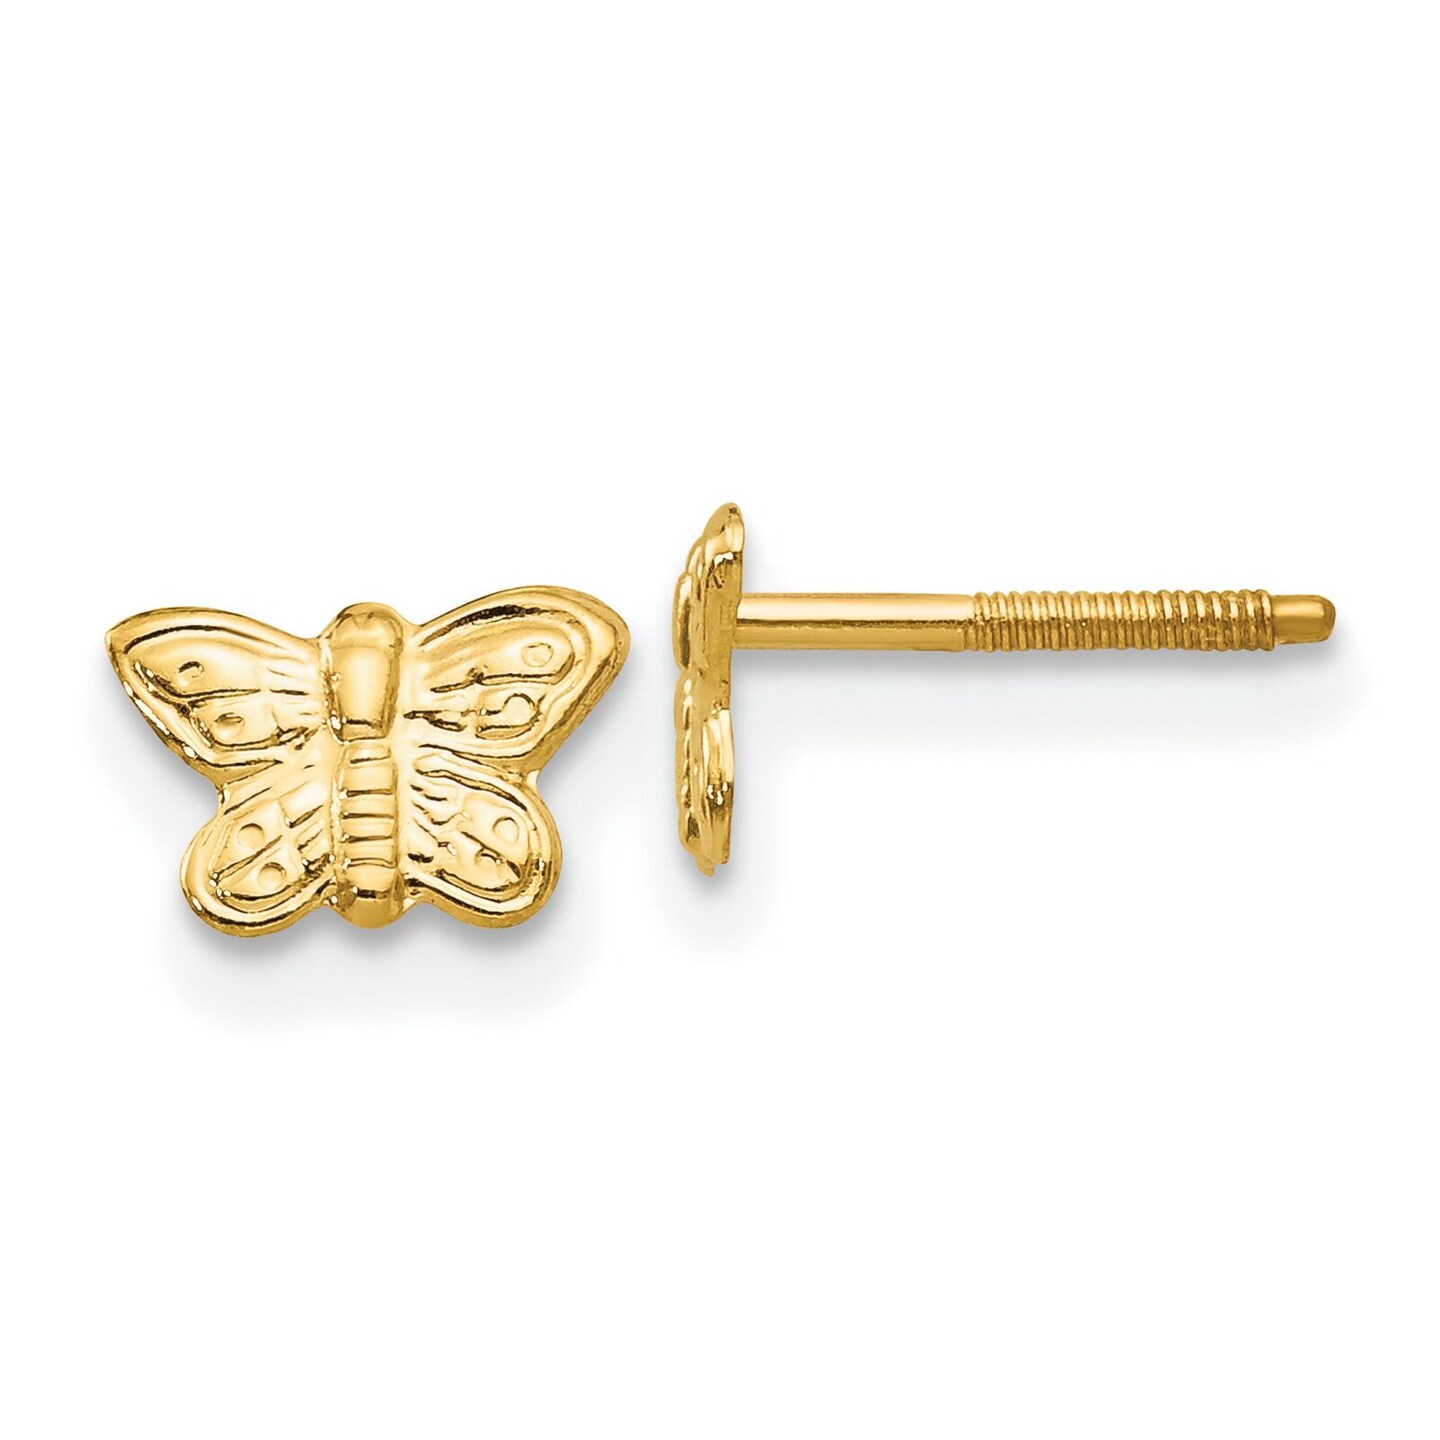 14K Yellow Gold Butterfly Screwback Earrings Jewelry 6mm x 6mm